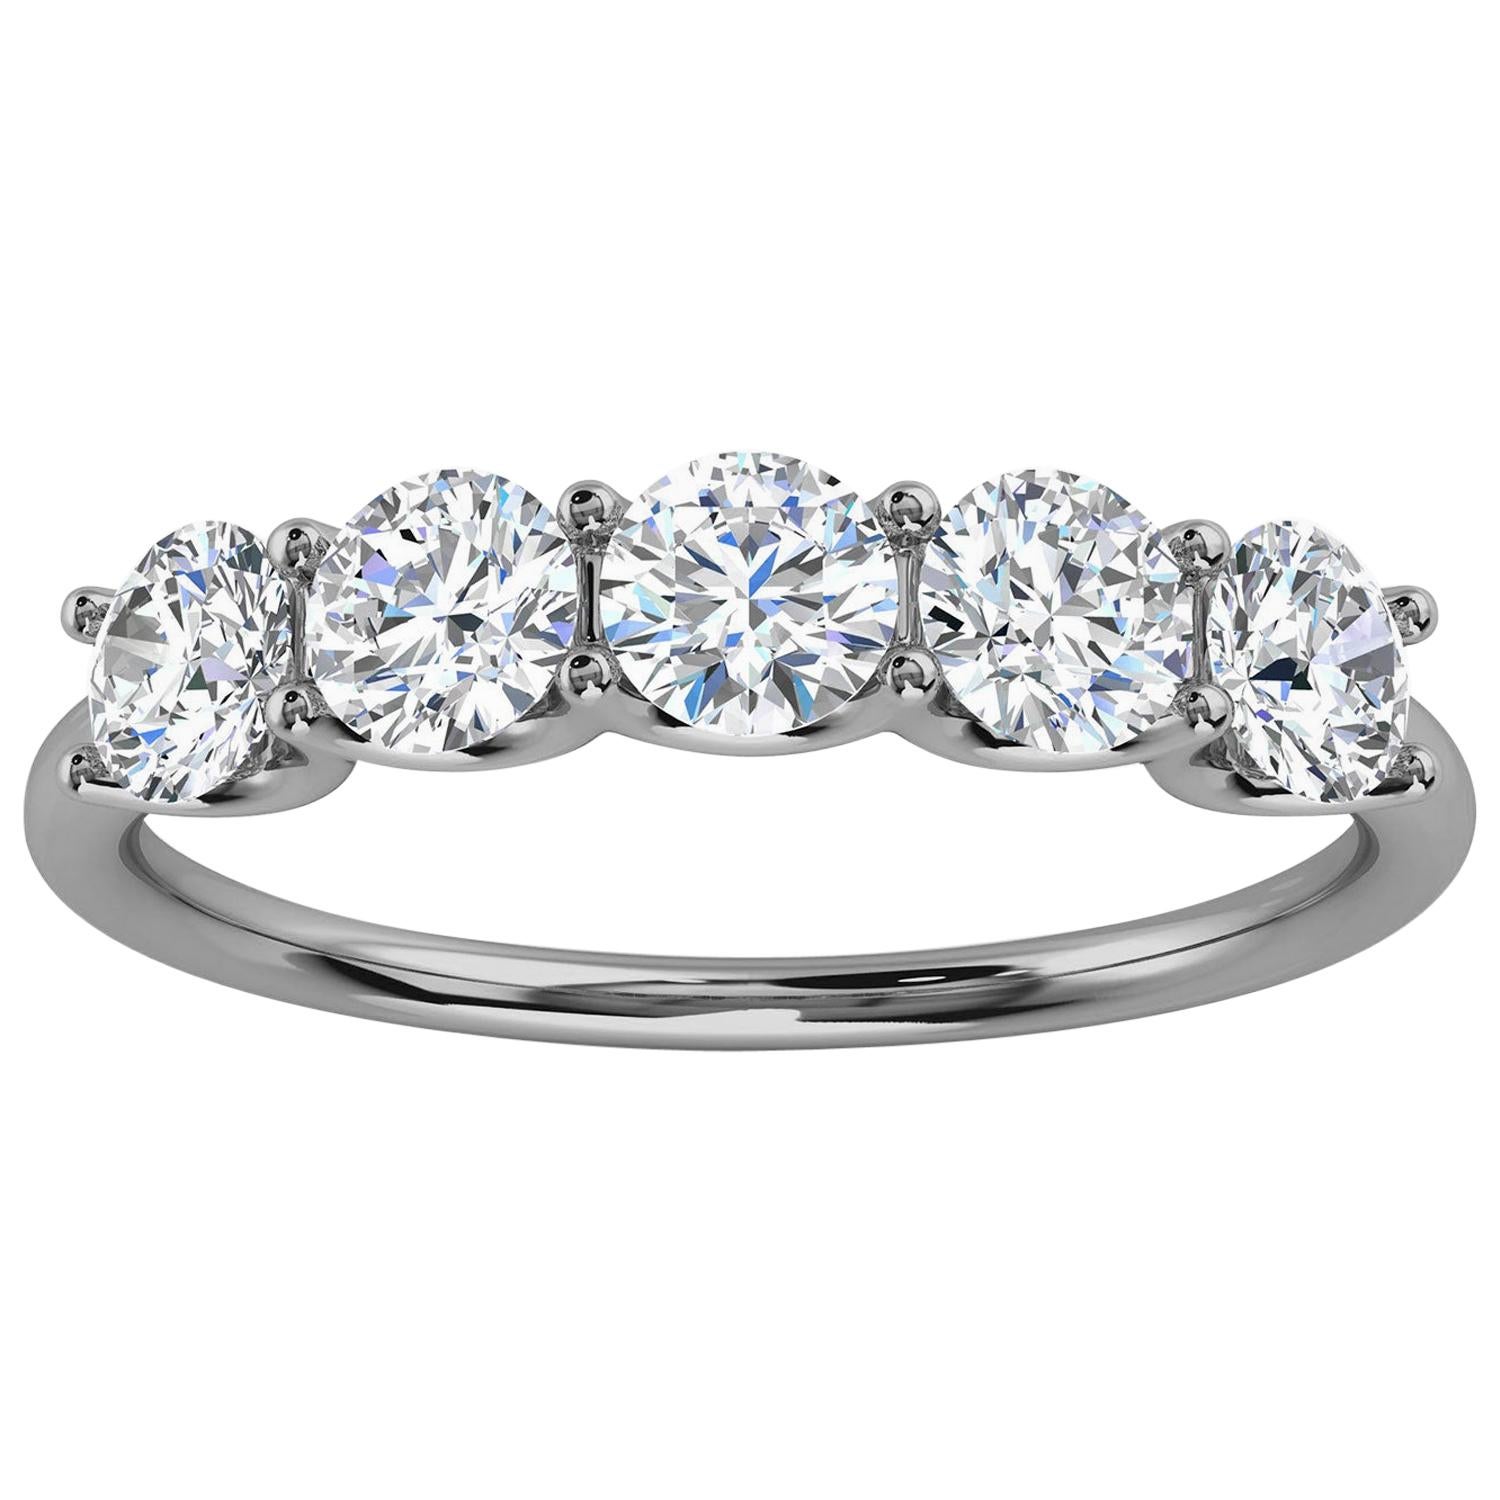 Platinum Sevilla Diamond Ring '1 Ct. tw' For Sale